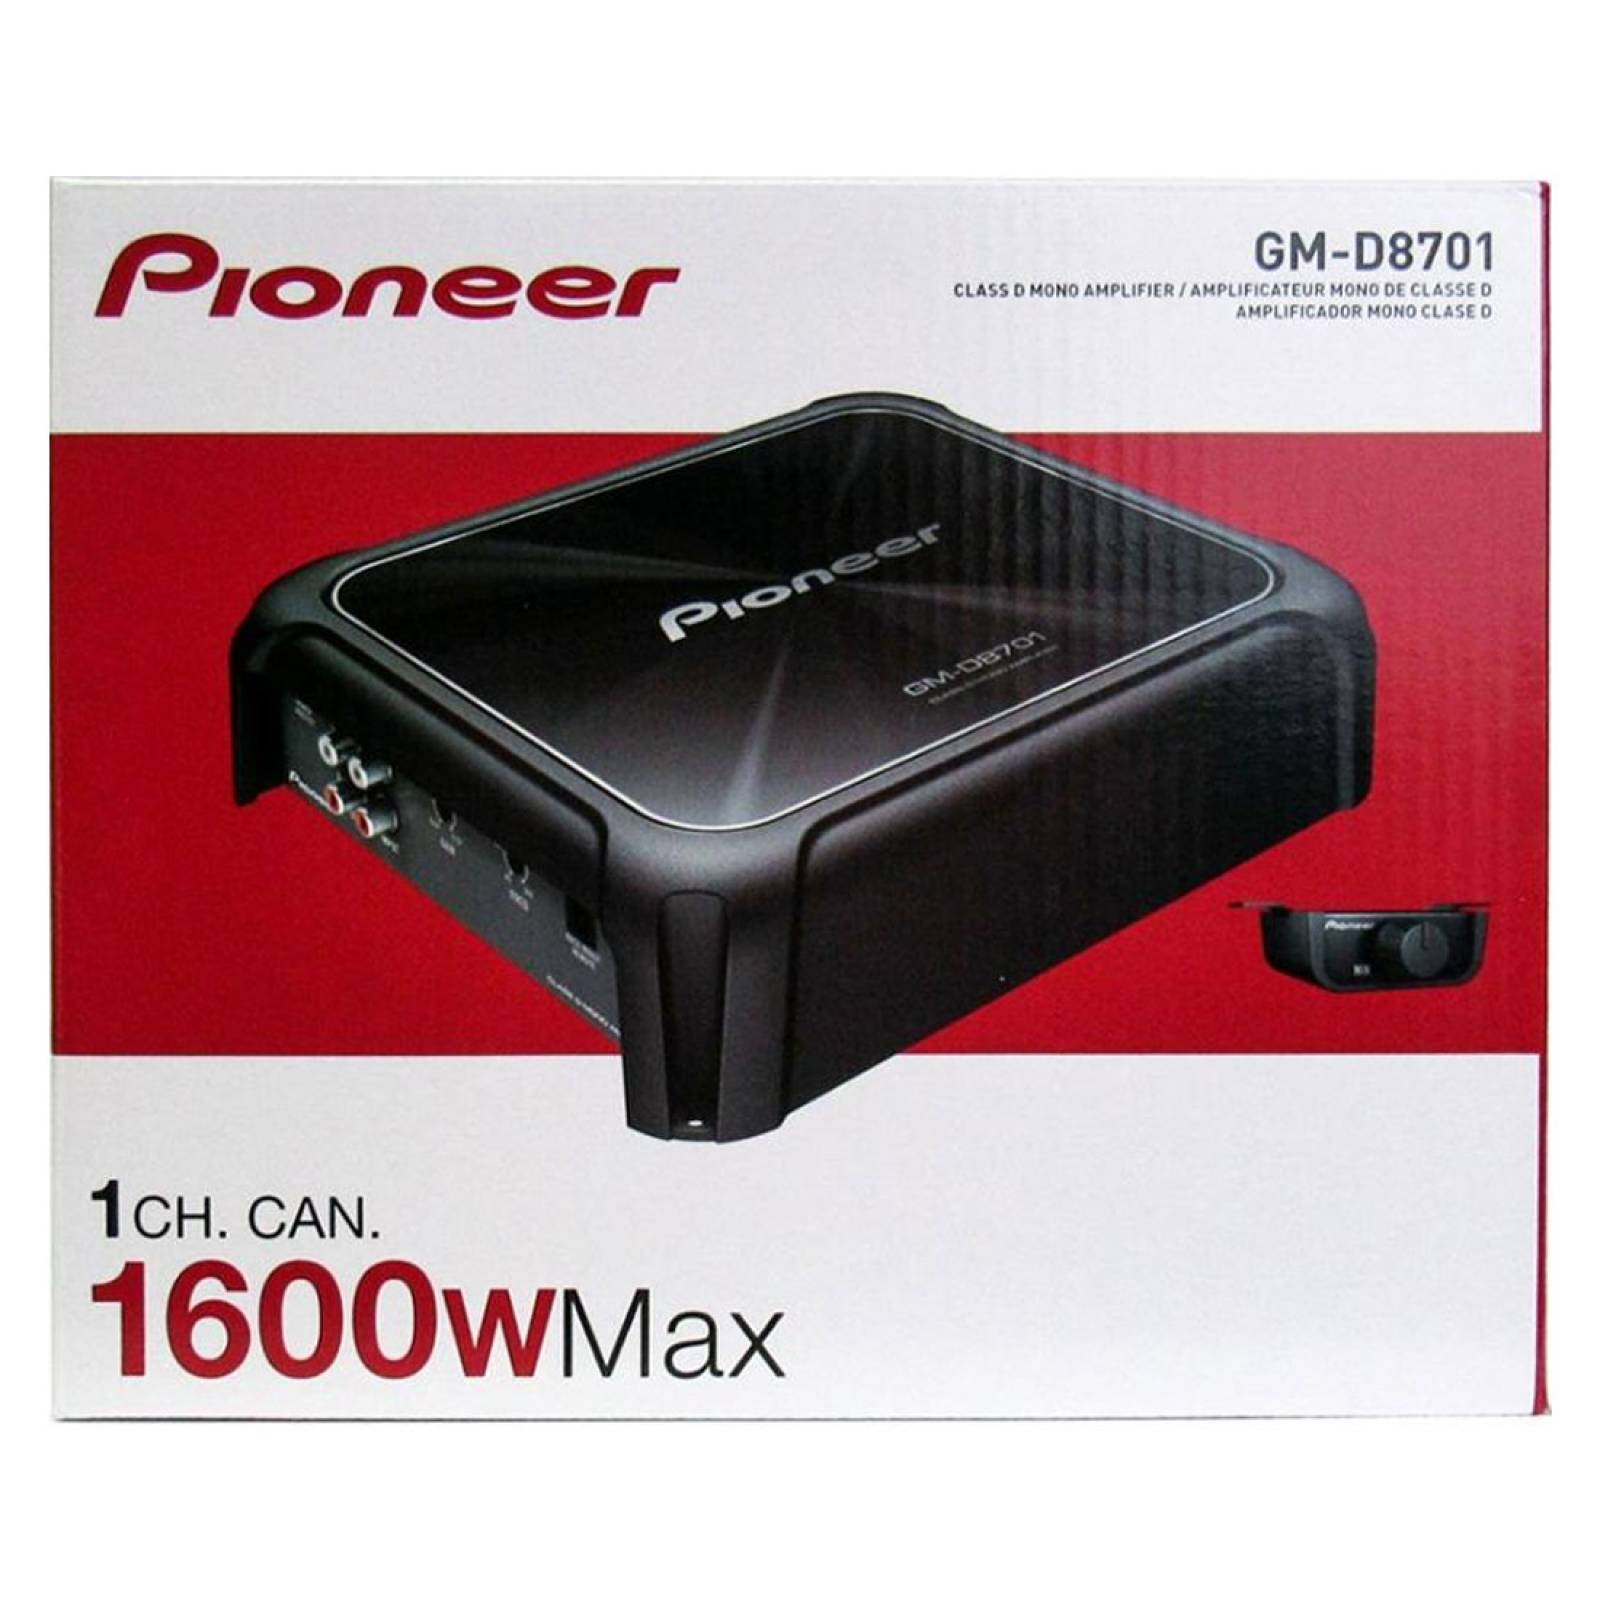 Amplificador Mono GM-D8701 1600w Clase D Pioneer